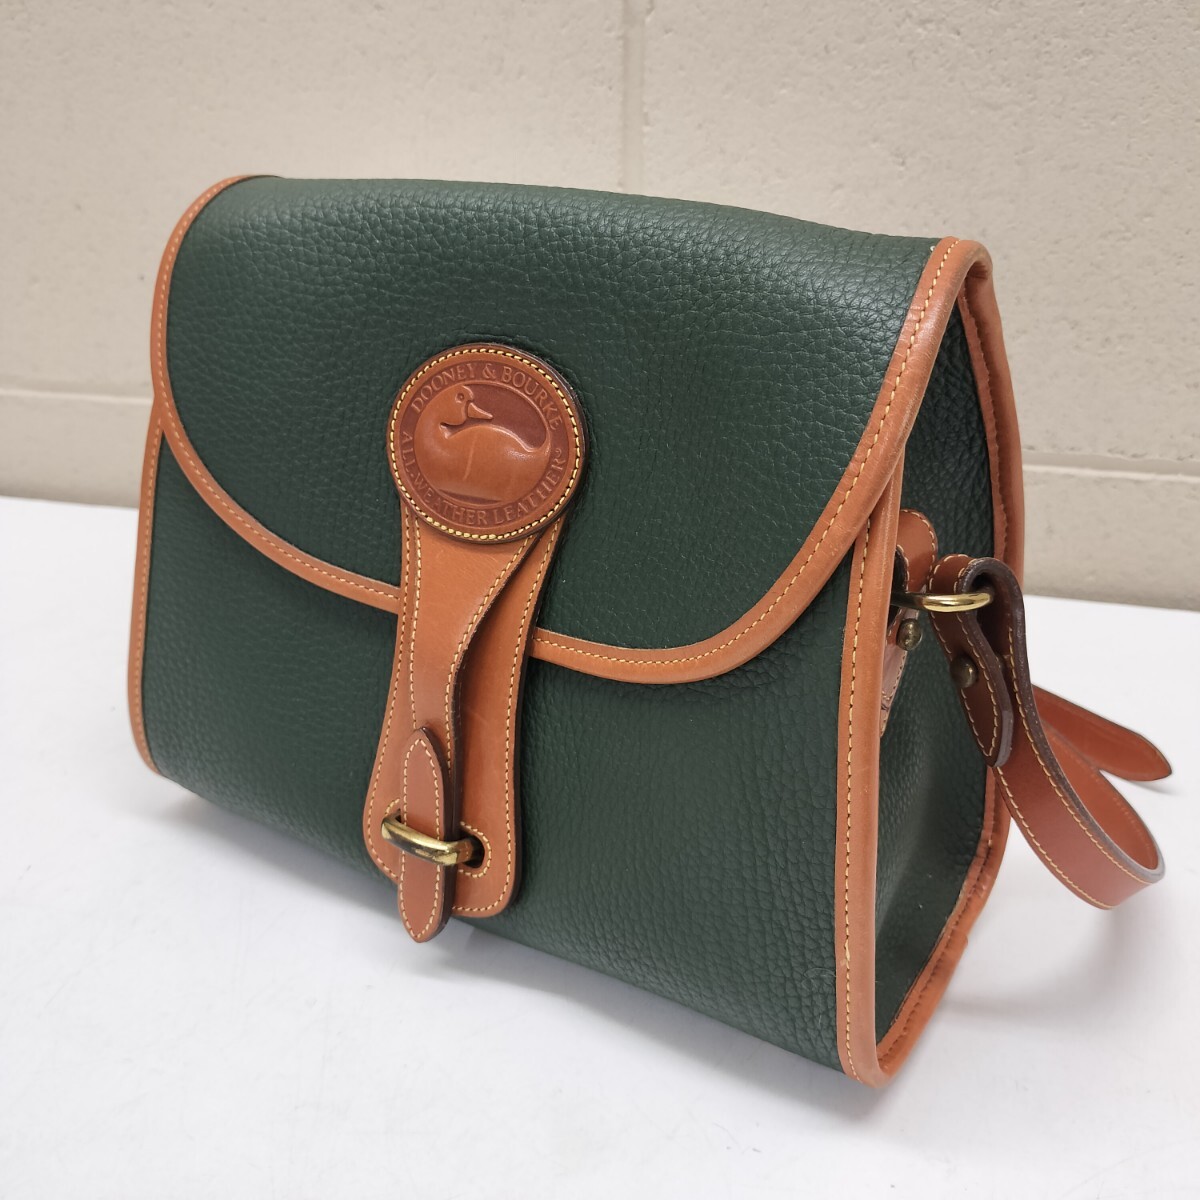 A[A-28] super rare *du- knee & Burke DOONEY&BOURKE handbag shoulder bag leather a Hill green green leather original leather shoulder ..